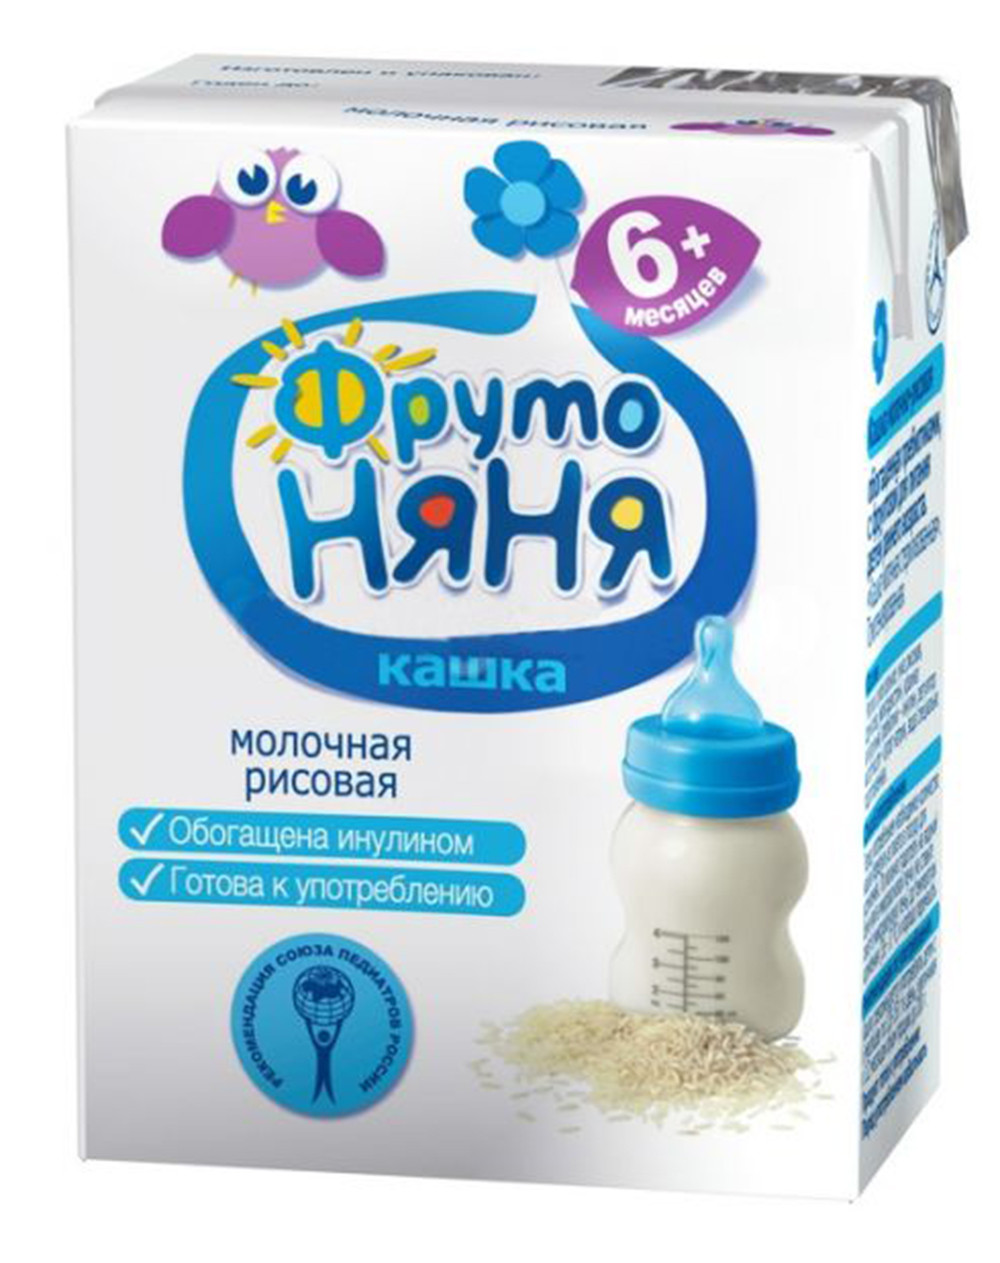 Д.п Кашка Фрутоняня гречневая молочная 200мл - интернет-магазин Близнецы